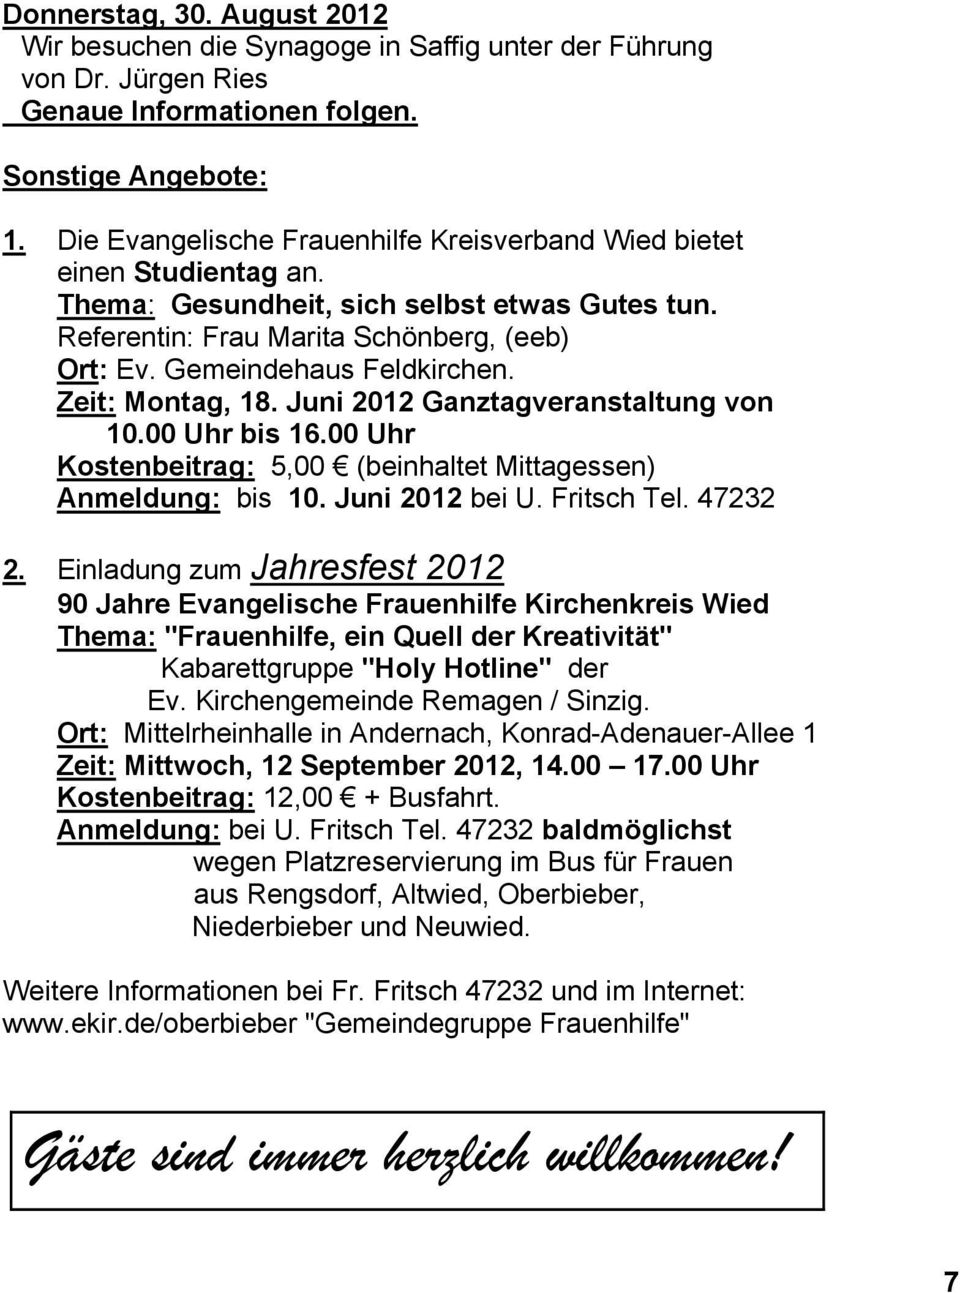 Zeit: Montag, 18. Juni 2012 Ganztagveranstaltung von 10.00 Uhr bis 16.00 Uhr Kostenbeitrag: 5,00 (beinhaltet Mittagessen) Anmeldung: bis 10. Juni 2012 bei U. Fritsch Tel. 47232 2.